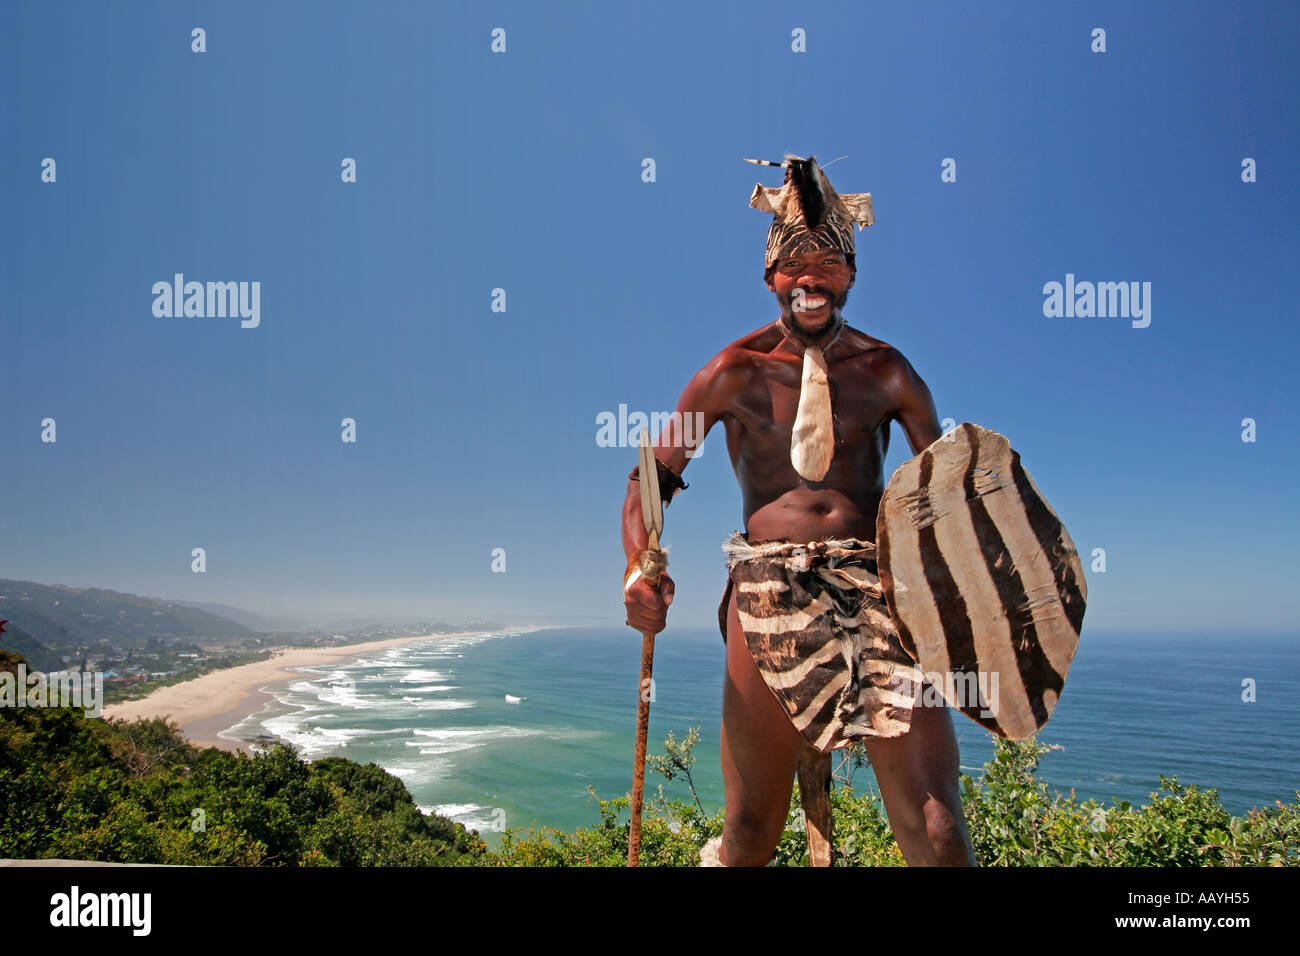 Afrique du Sud garden route en Afrique costume traditionel qui pose pour les touristes de la plage sauvage de vue Banque D'Images